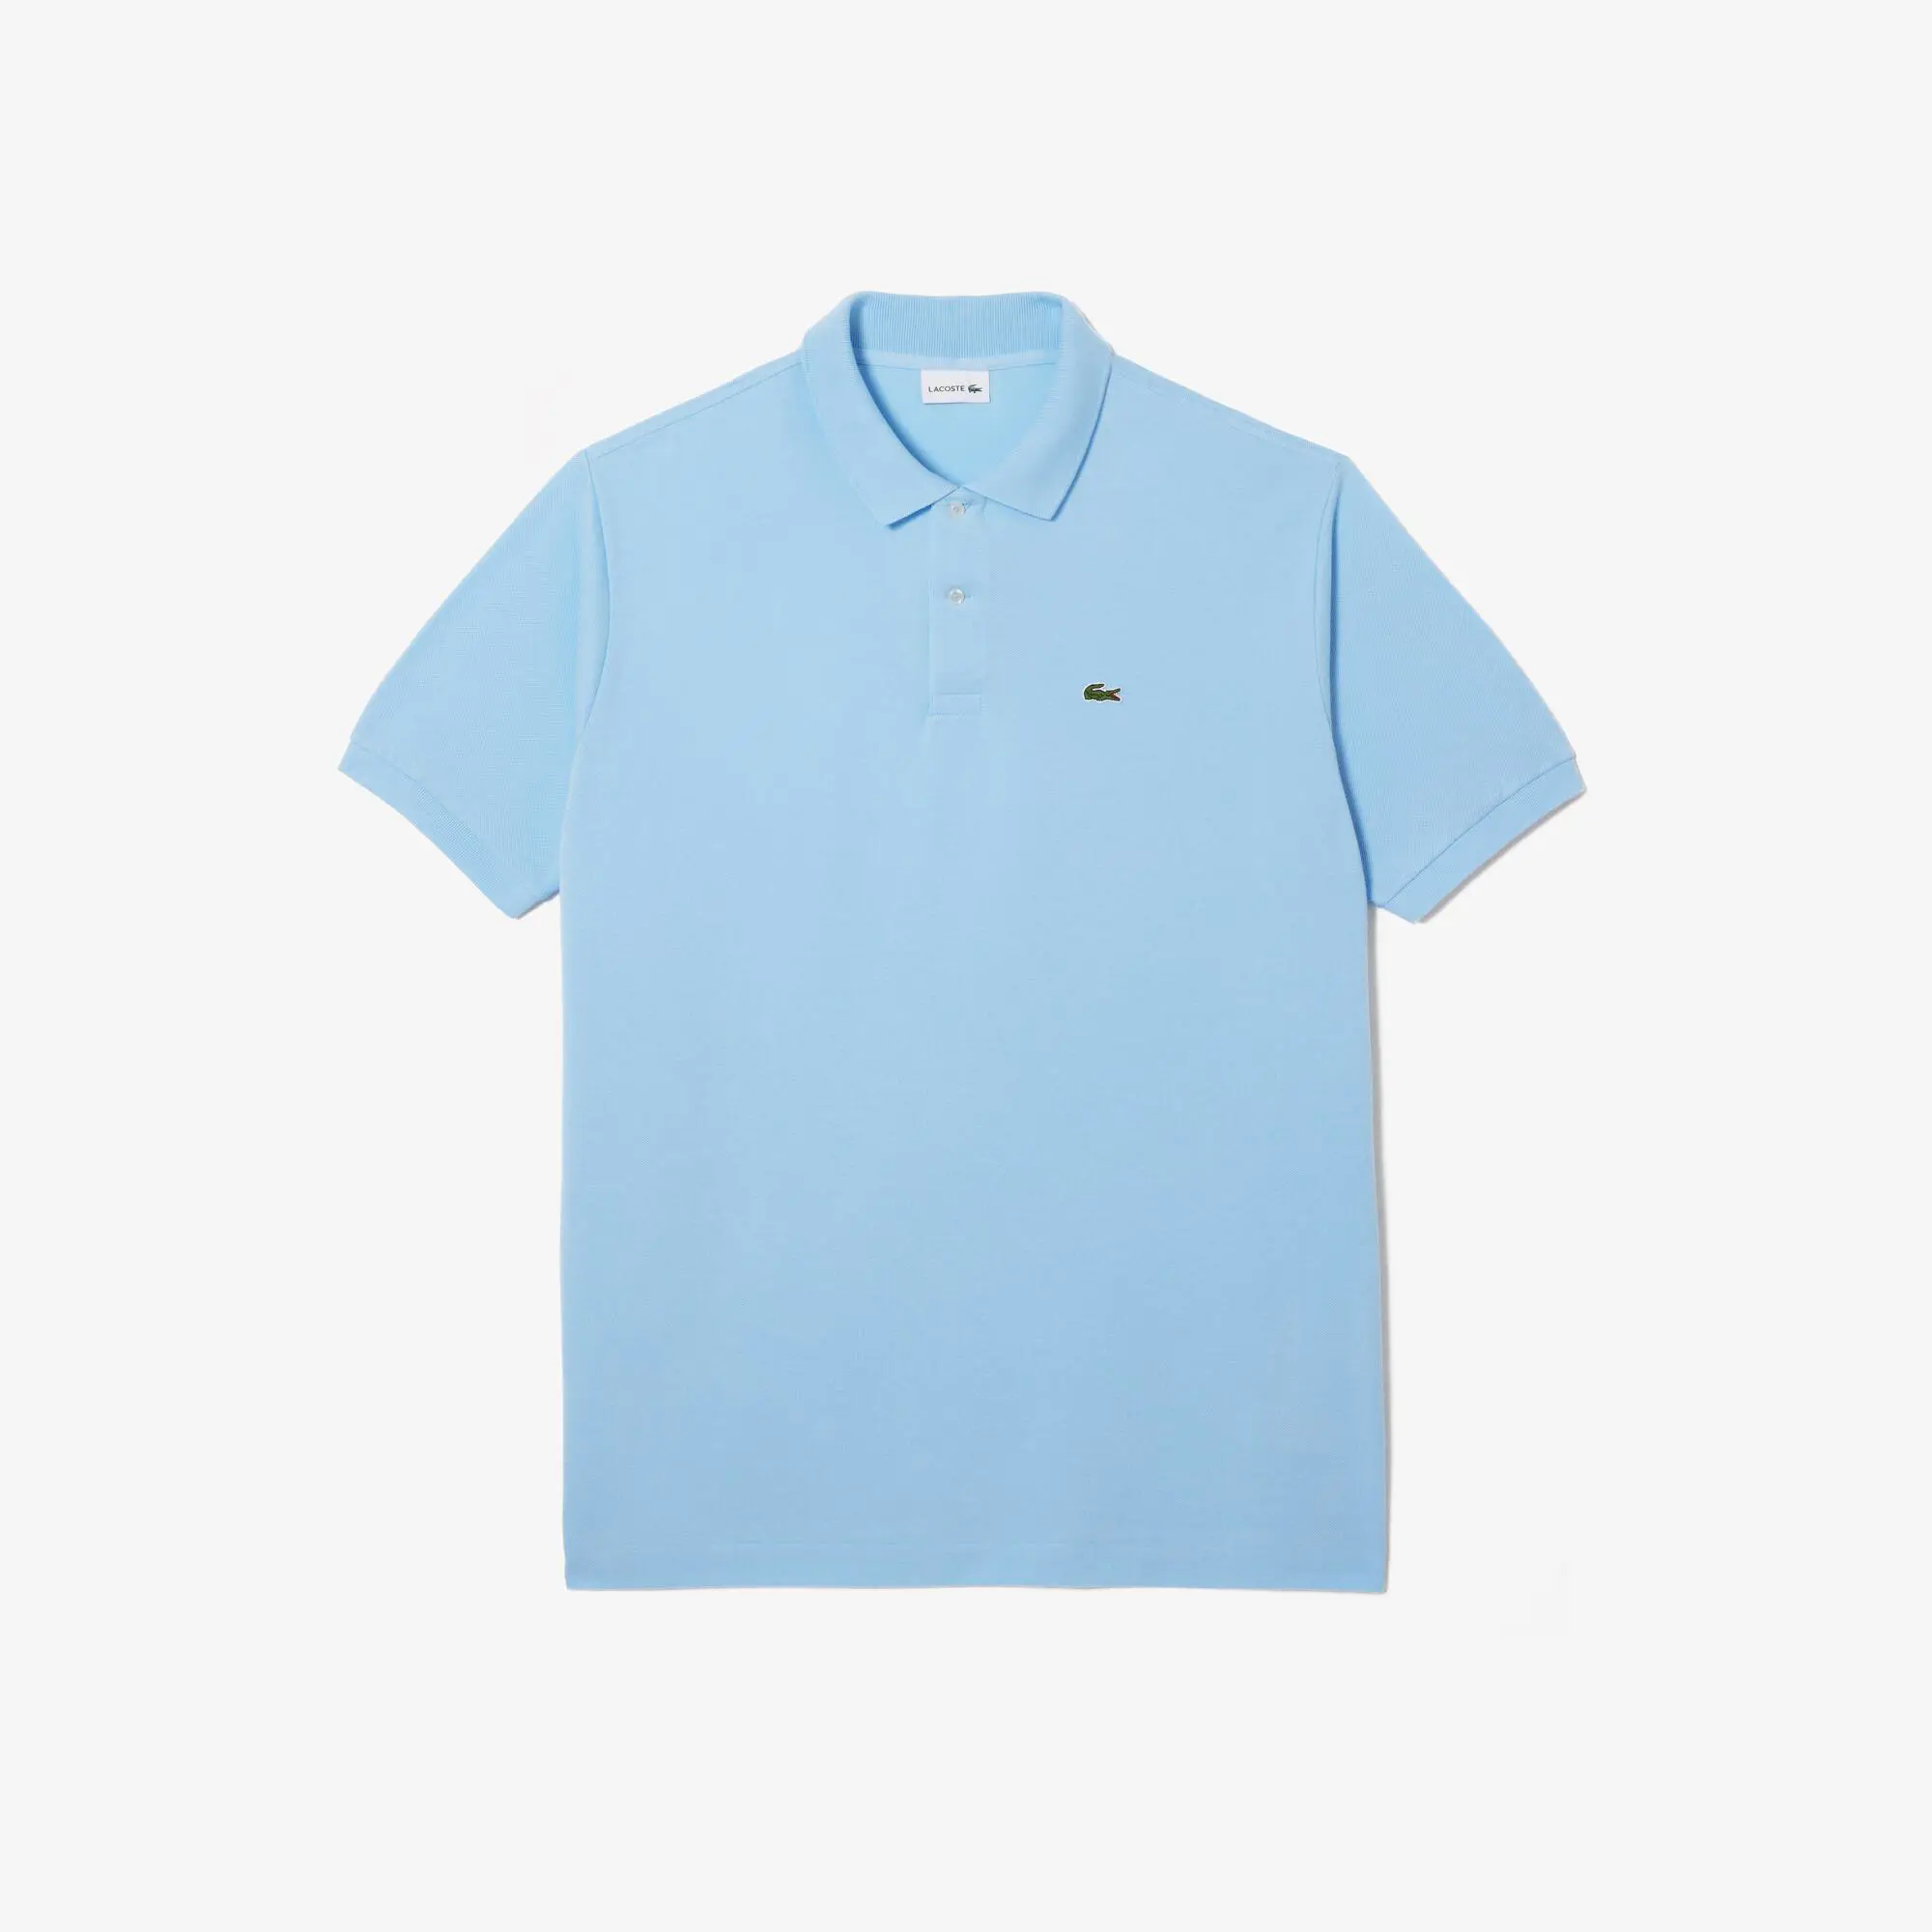 Lacoste Men’s Lacoste Cotton Petit Piqué Polo Shirt - Plus Size - Tall. 1